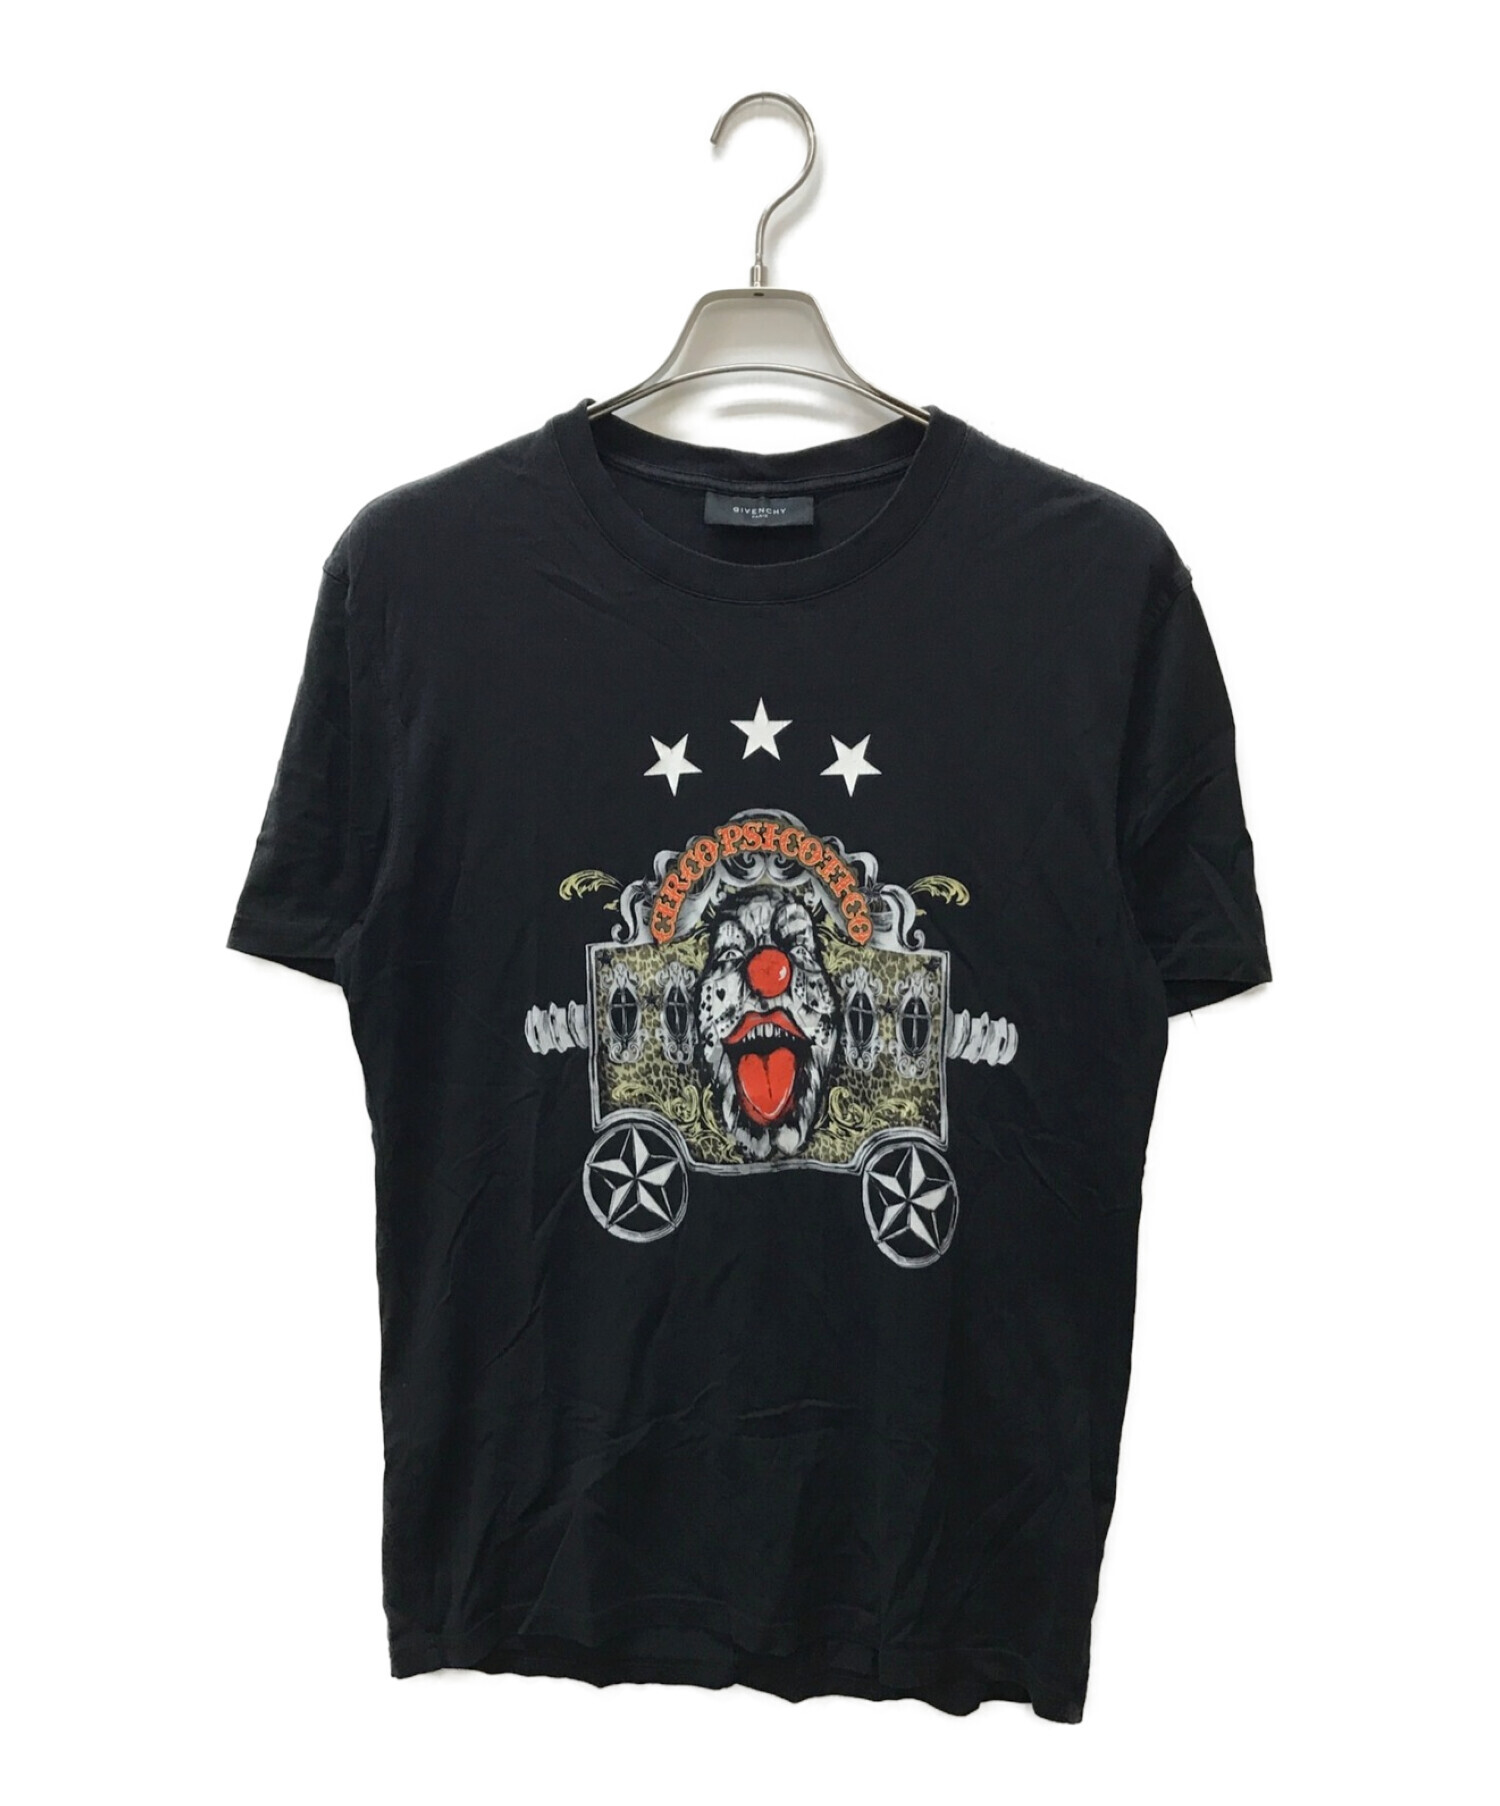 GIVENCHY (ジバンシィ) ピエロプリントTシャツ ブラック サイズ:L